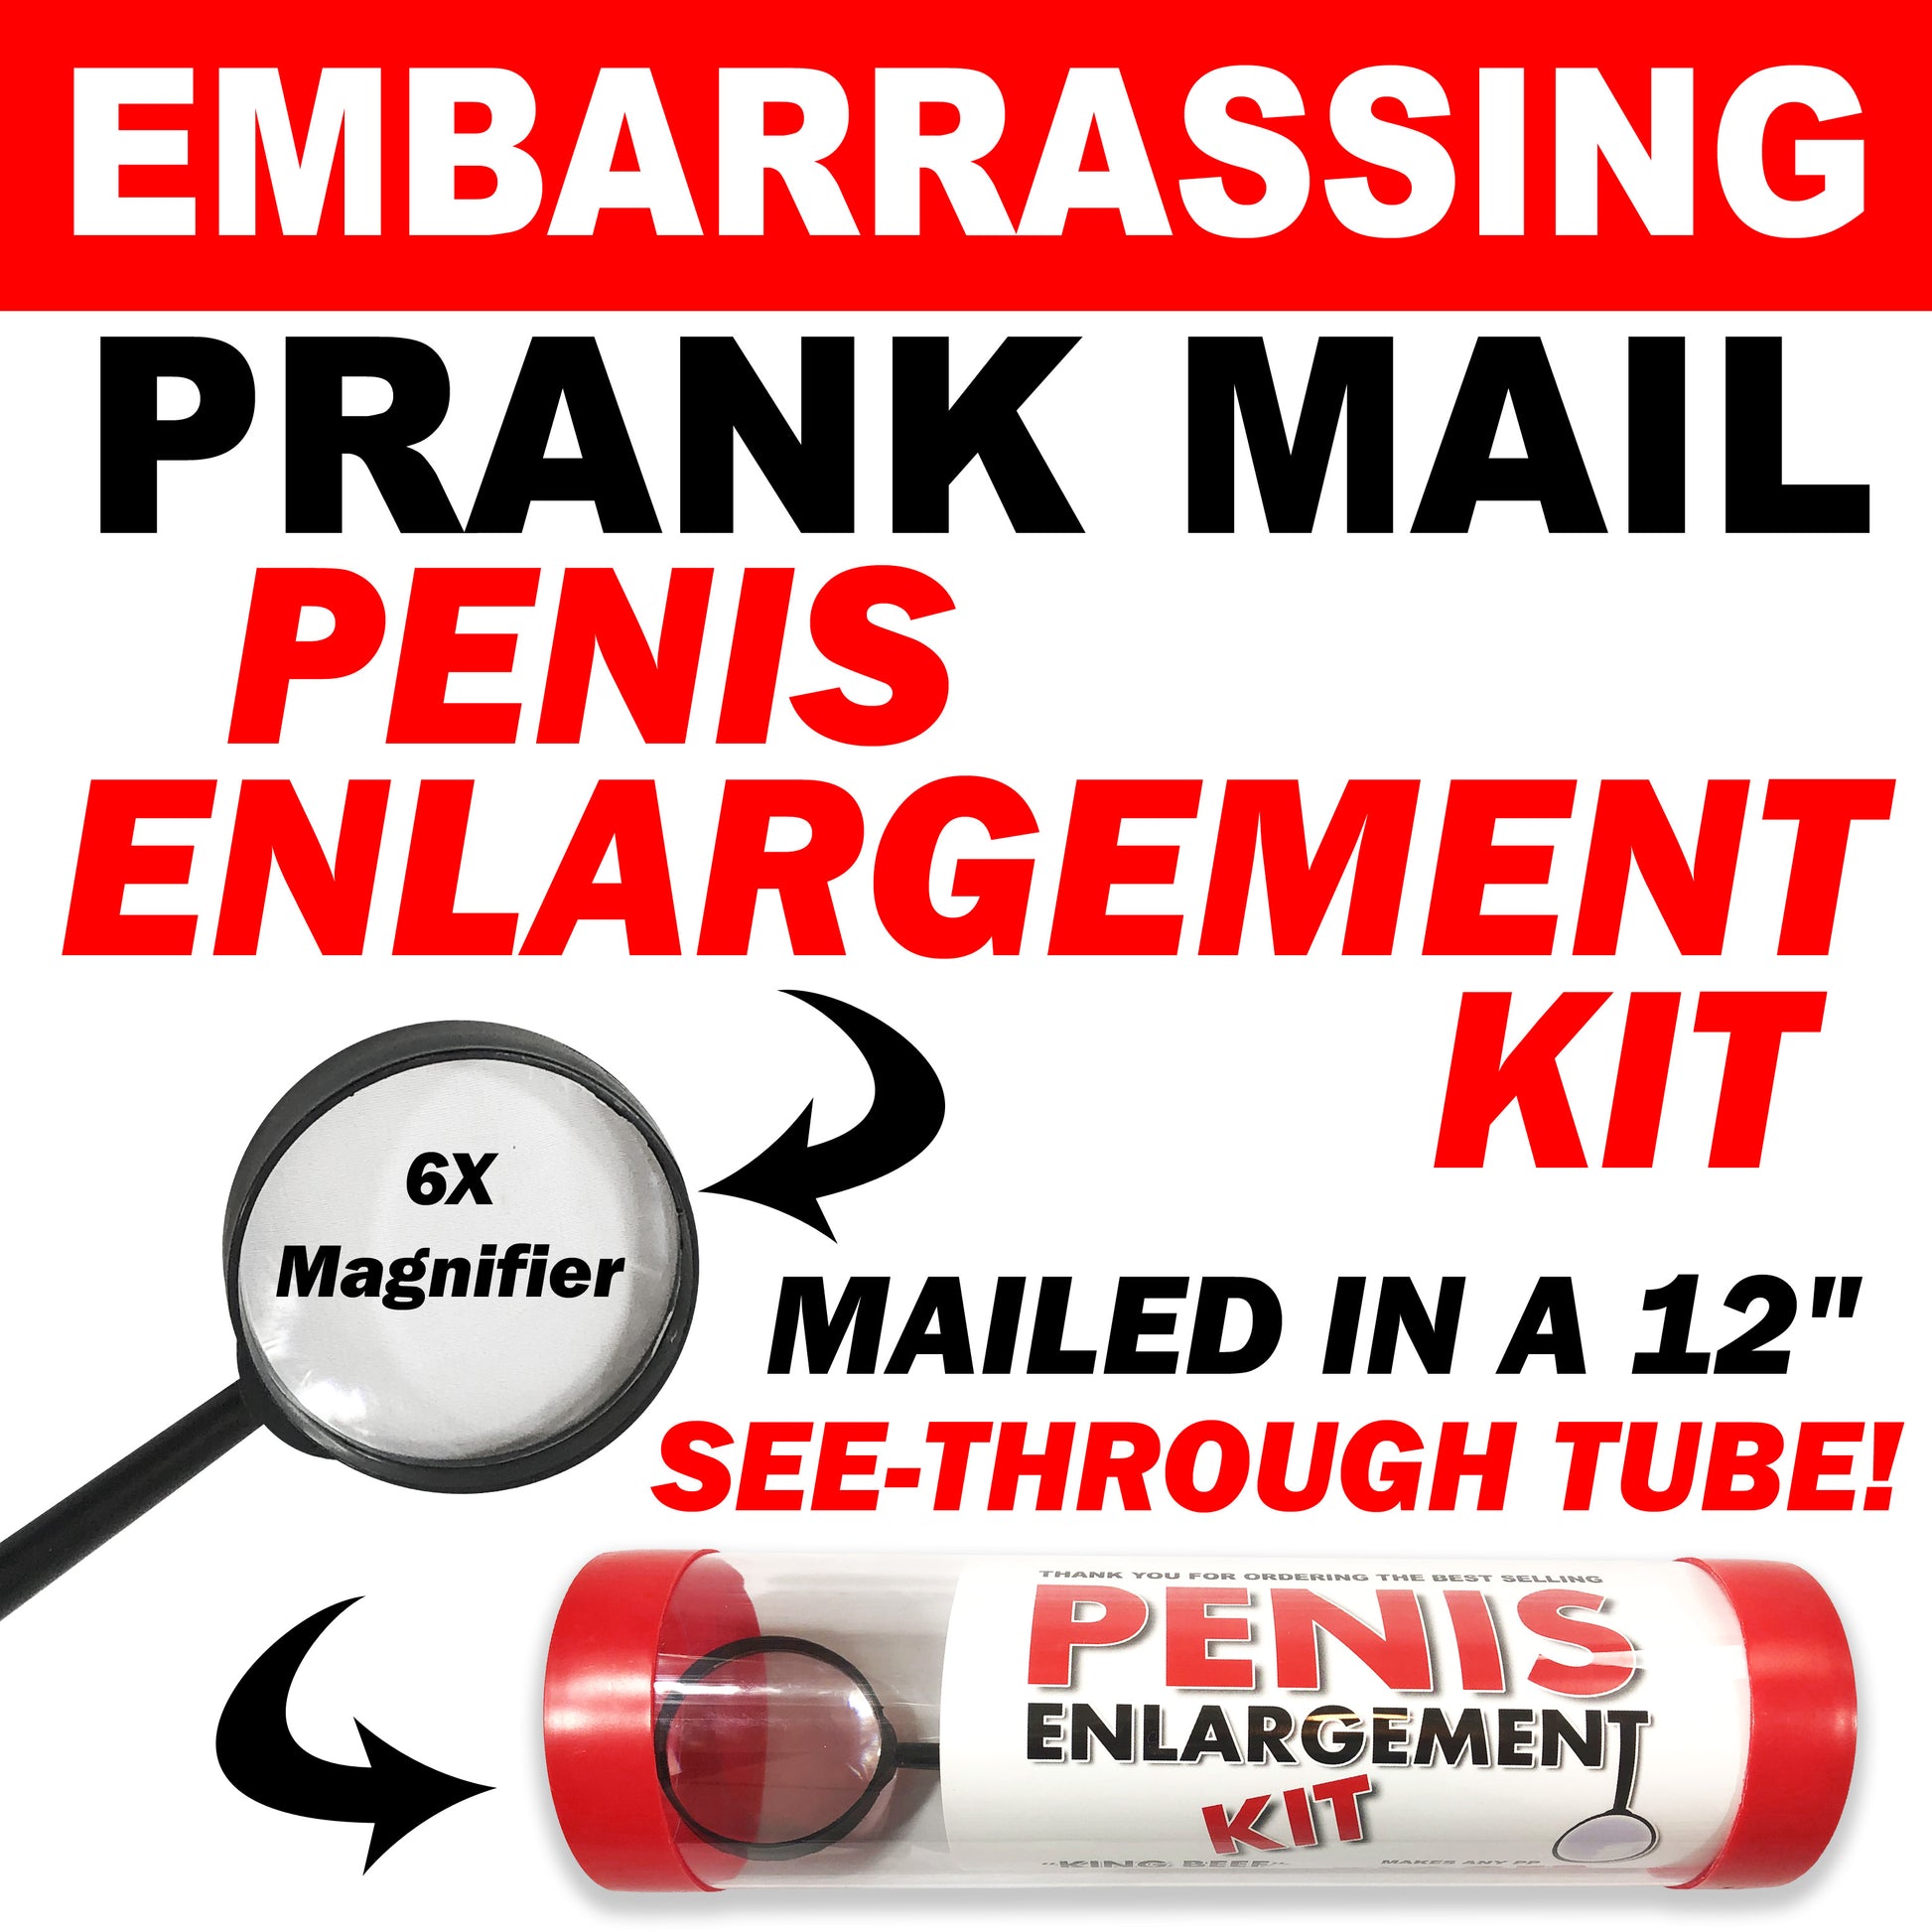 Penis Enlargement Kit embarrassing clear prank tube